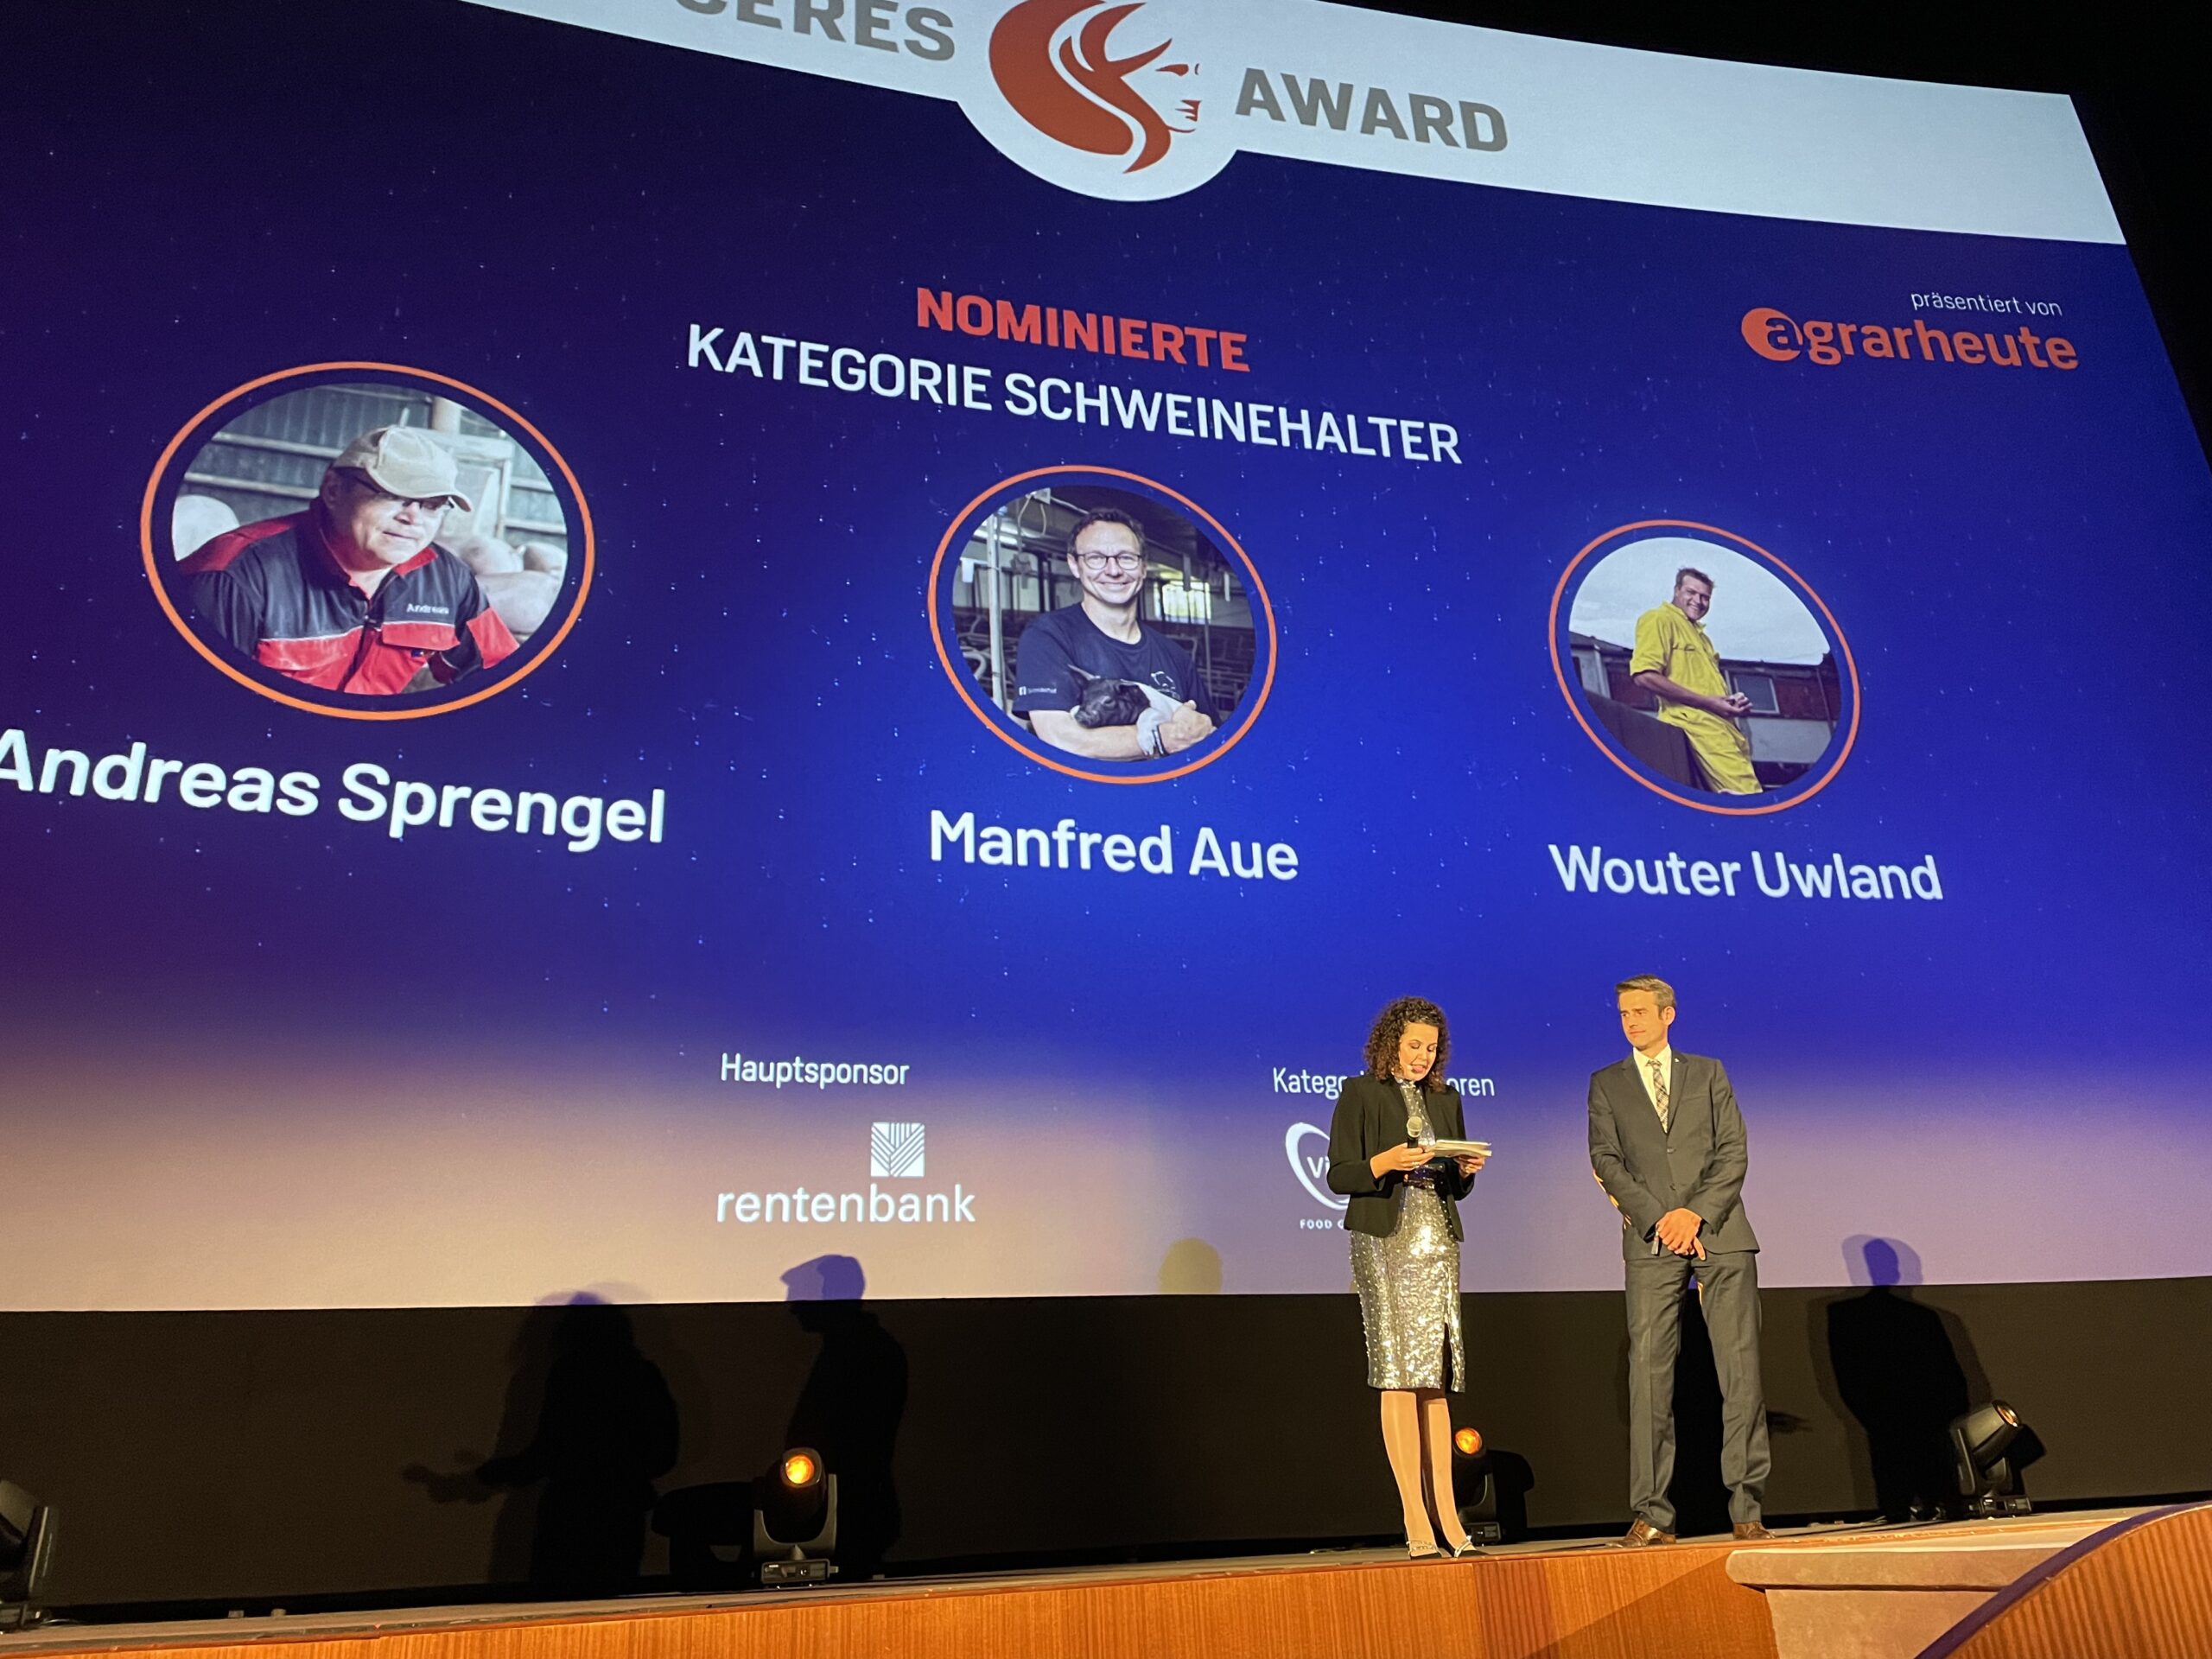 Doppelsieg beim CERES Award 2022